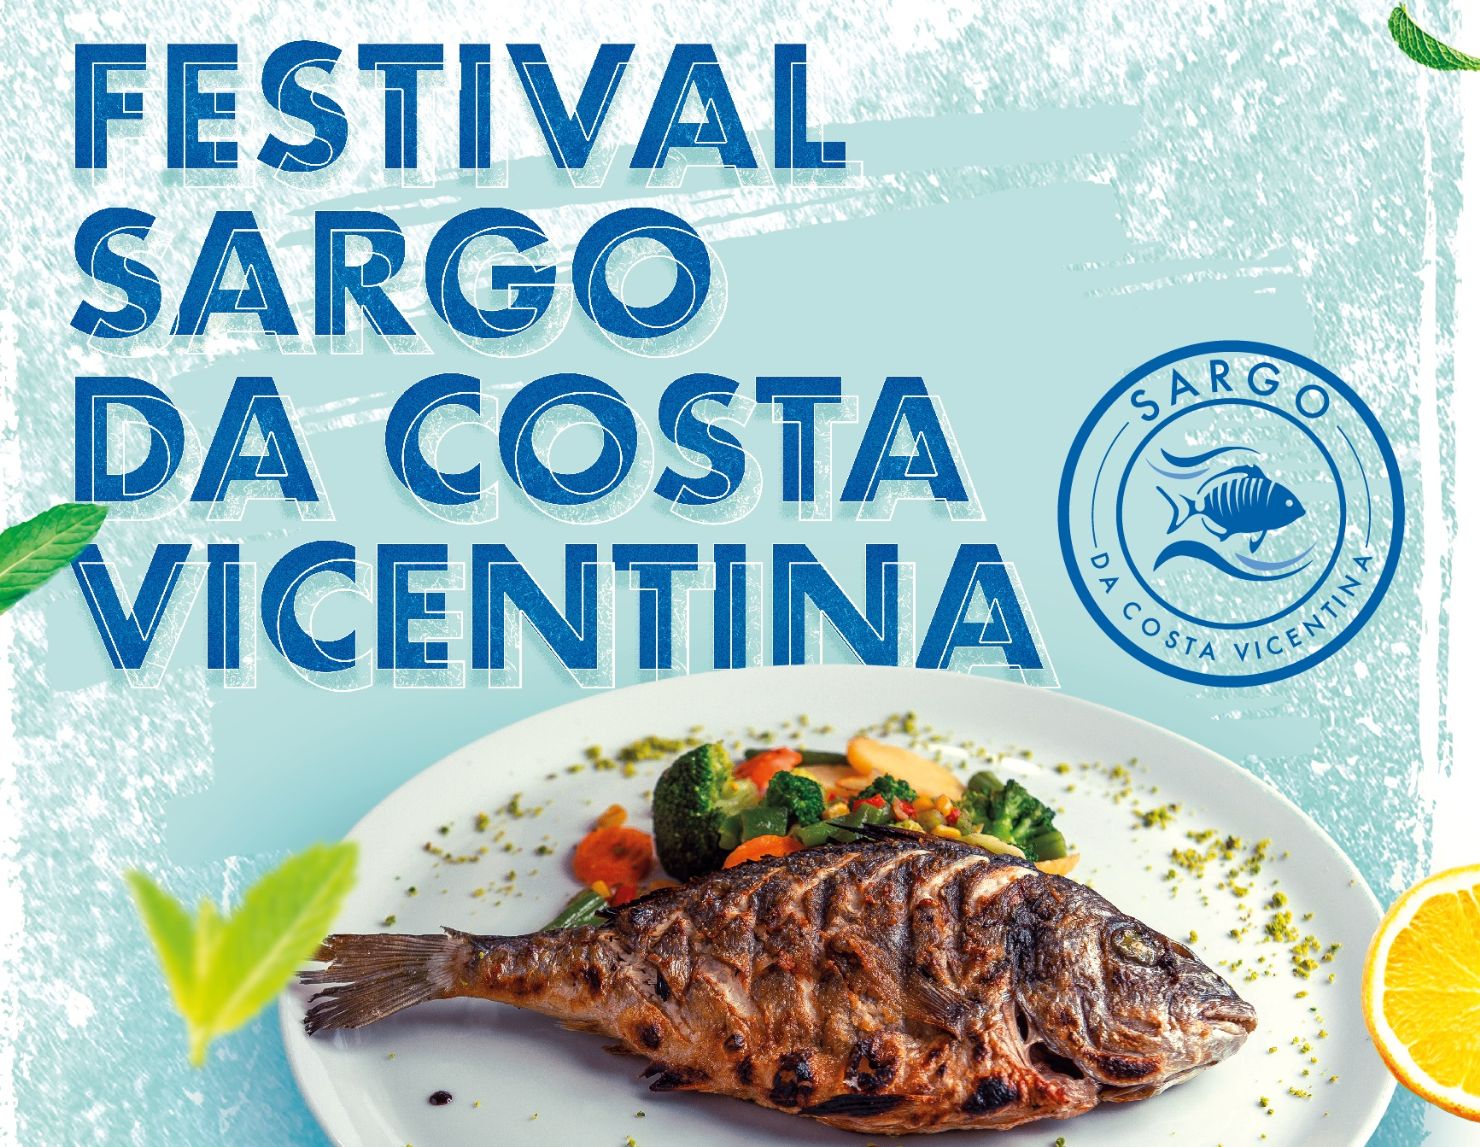 Festival do Sargo da Costa Vicentina de 20 a 29 de Maio